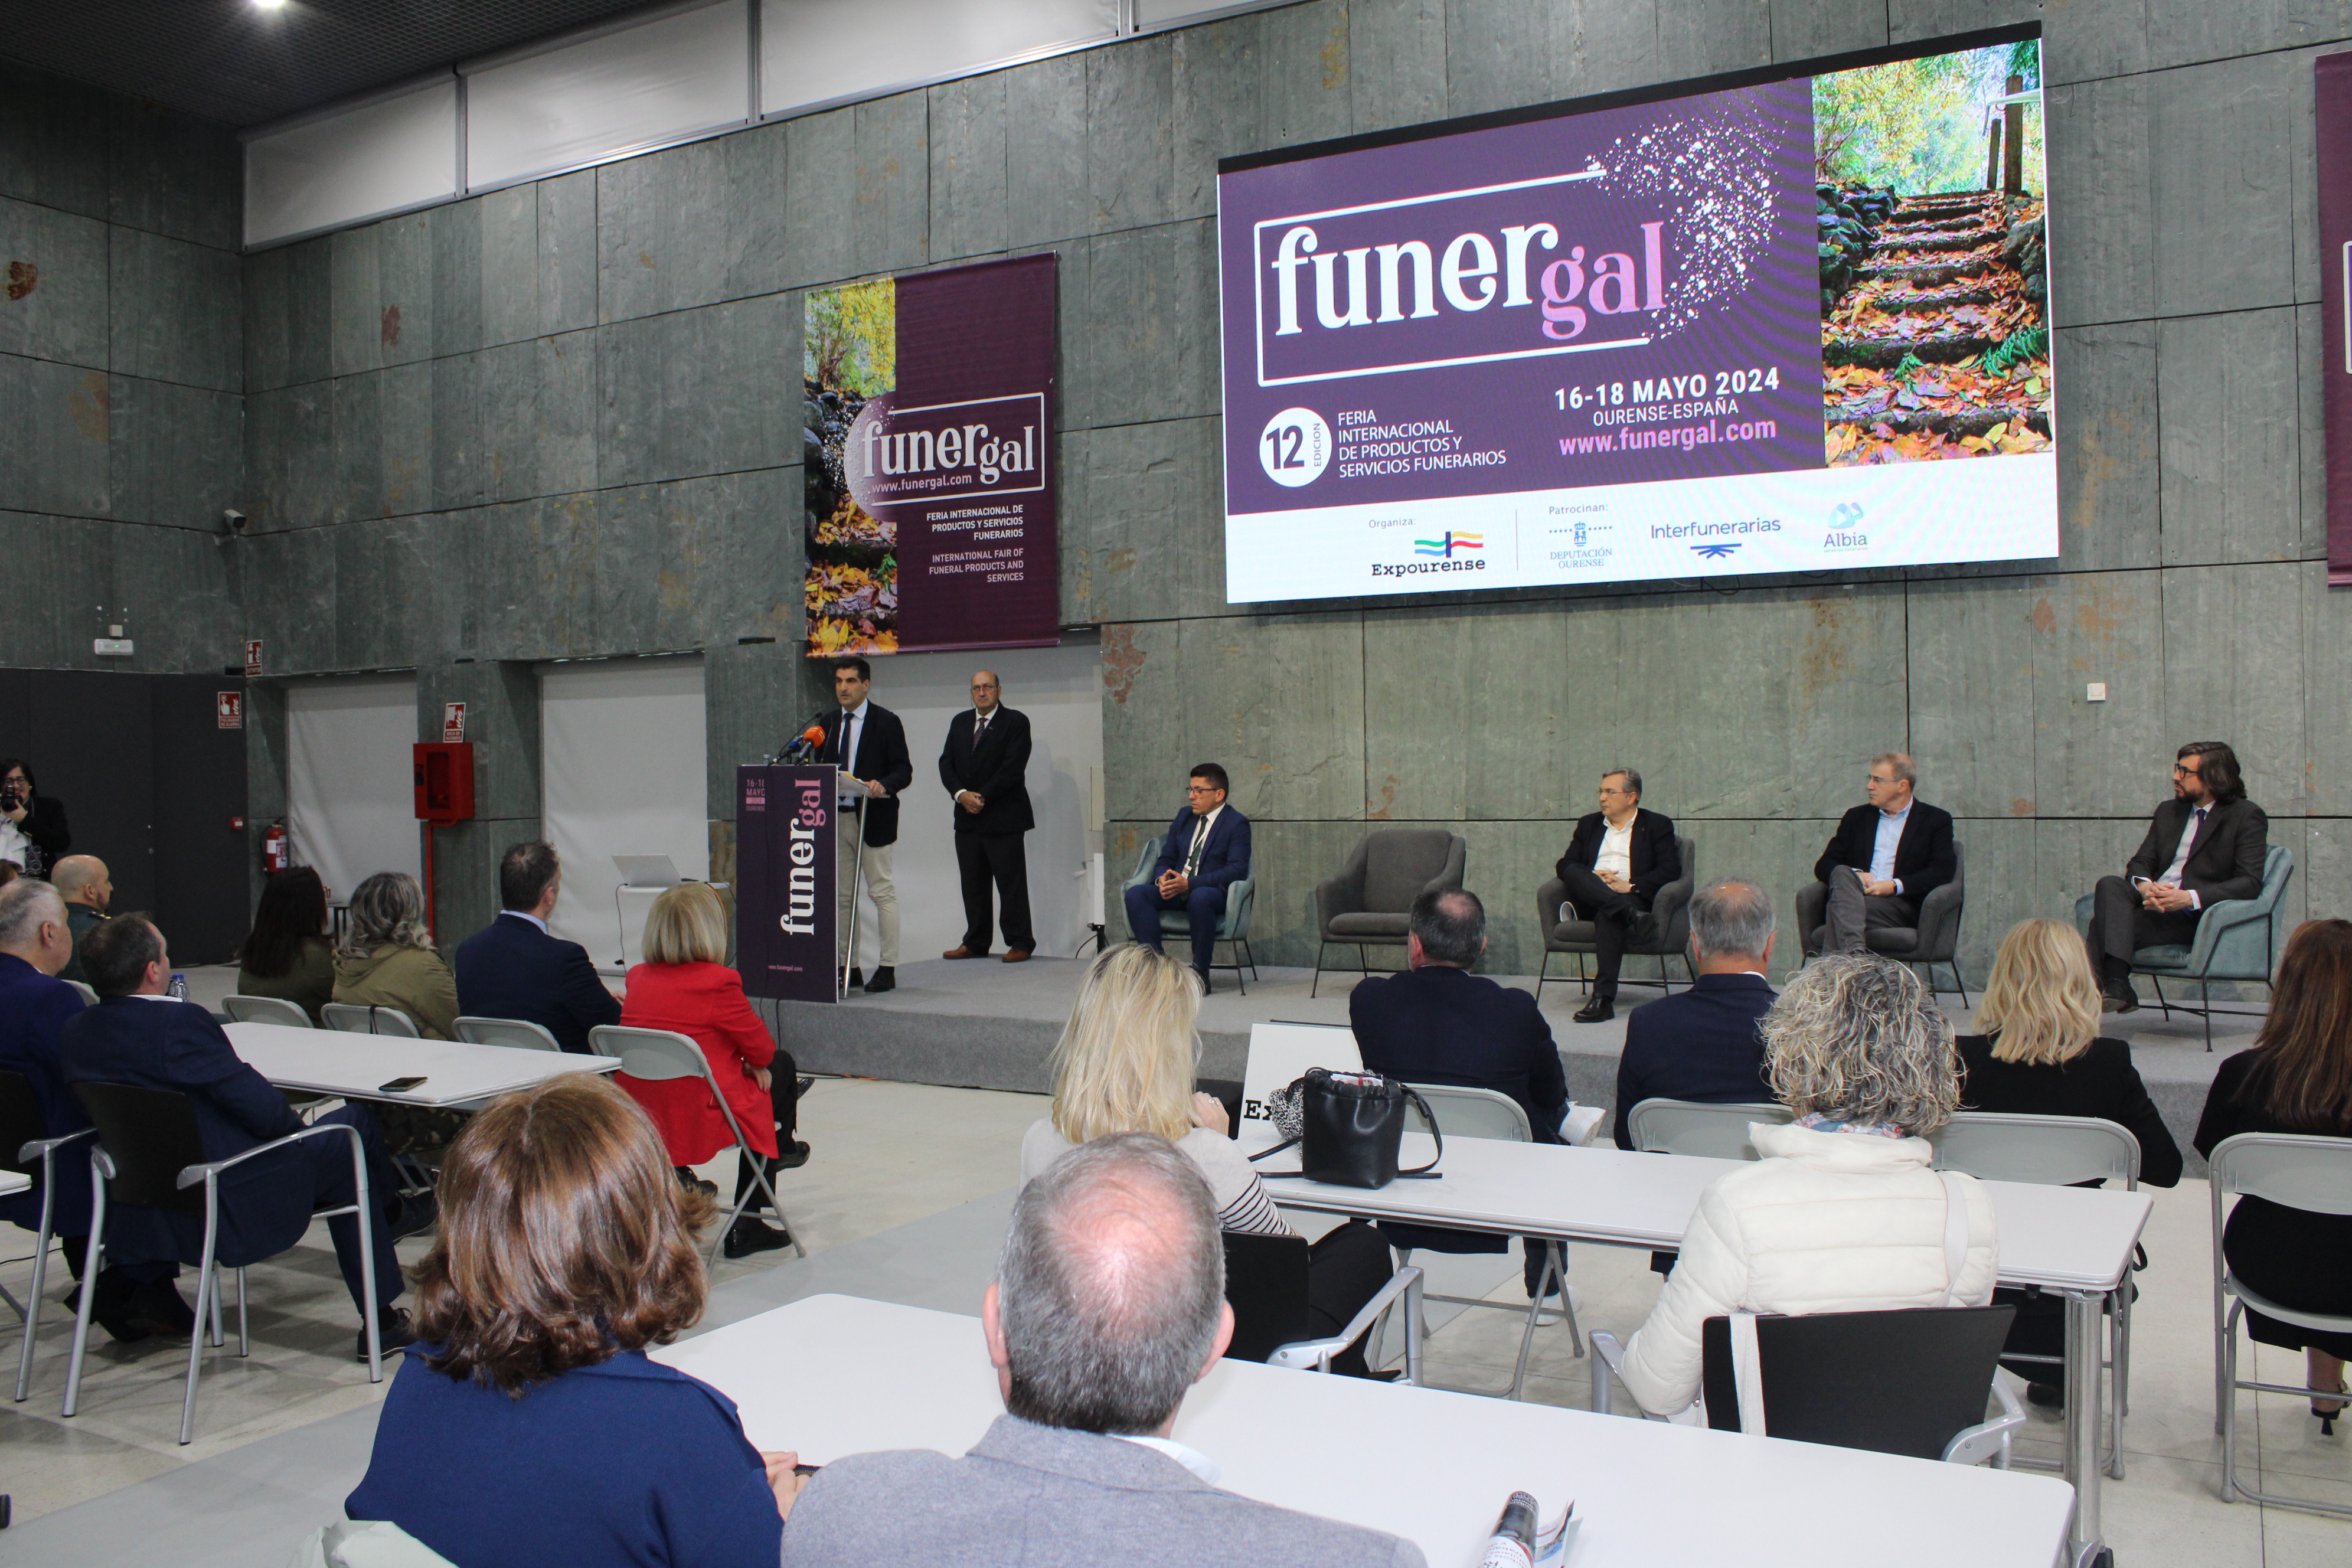 Image 2 of article A Xunta pon de relevo Expourense como recinto dinamizador da economía local no día no que inaugura 'Funergal', a súa primeira Feira internacional de 2024